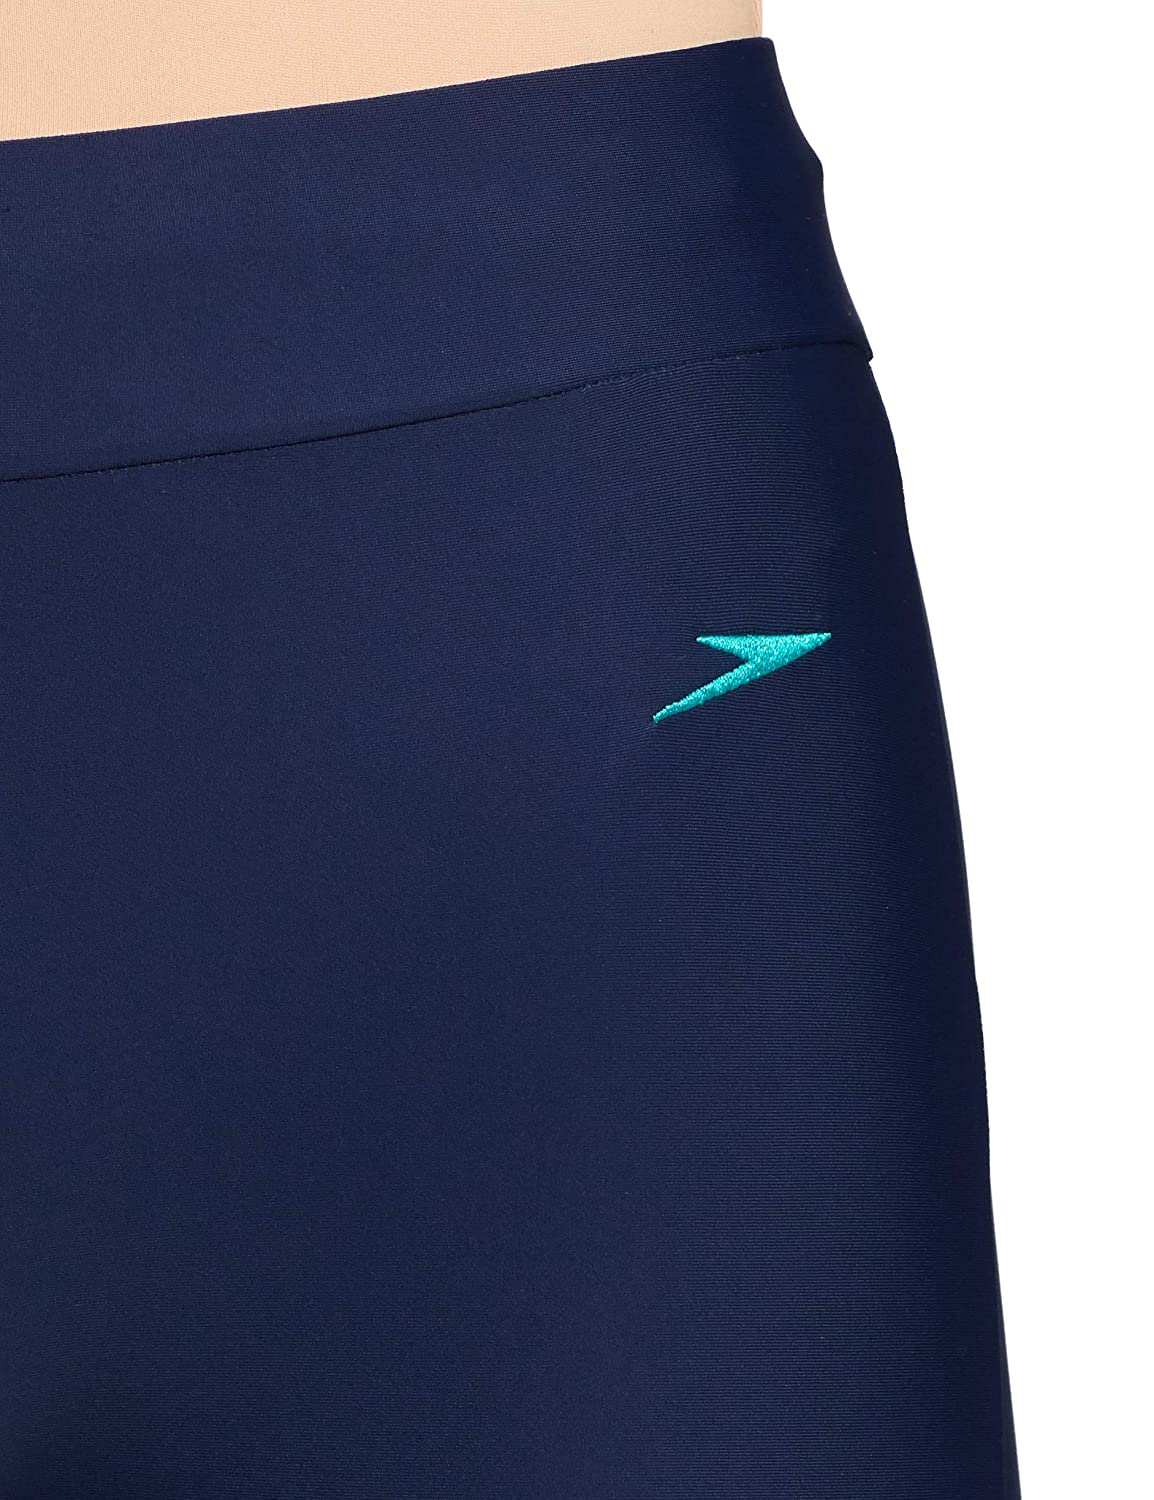 Pencil swim skirt with capri leggings | kampkloz